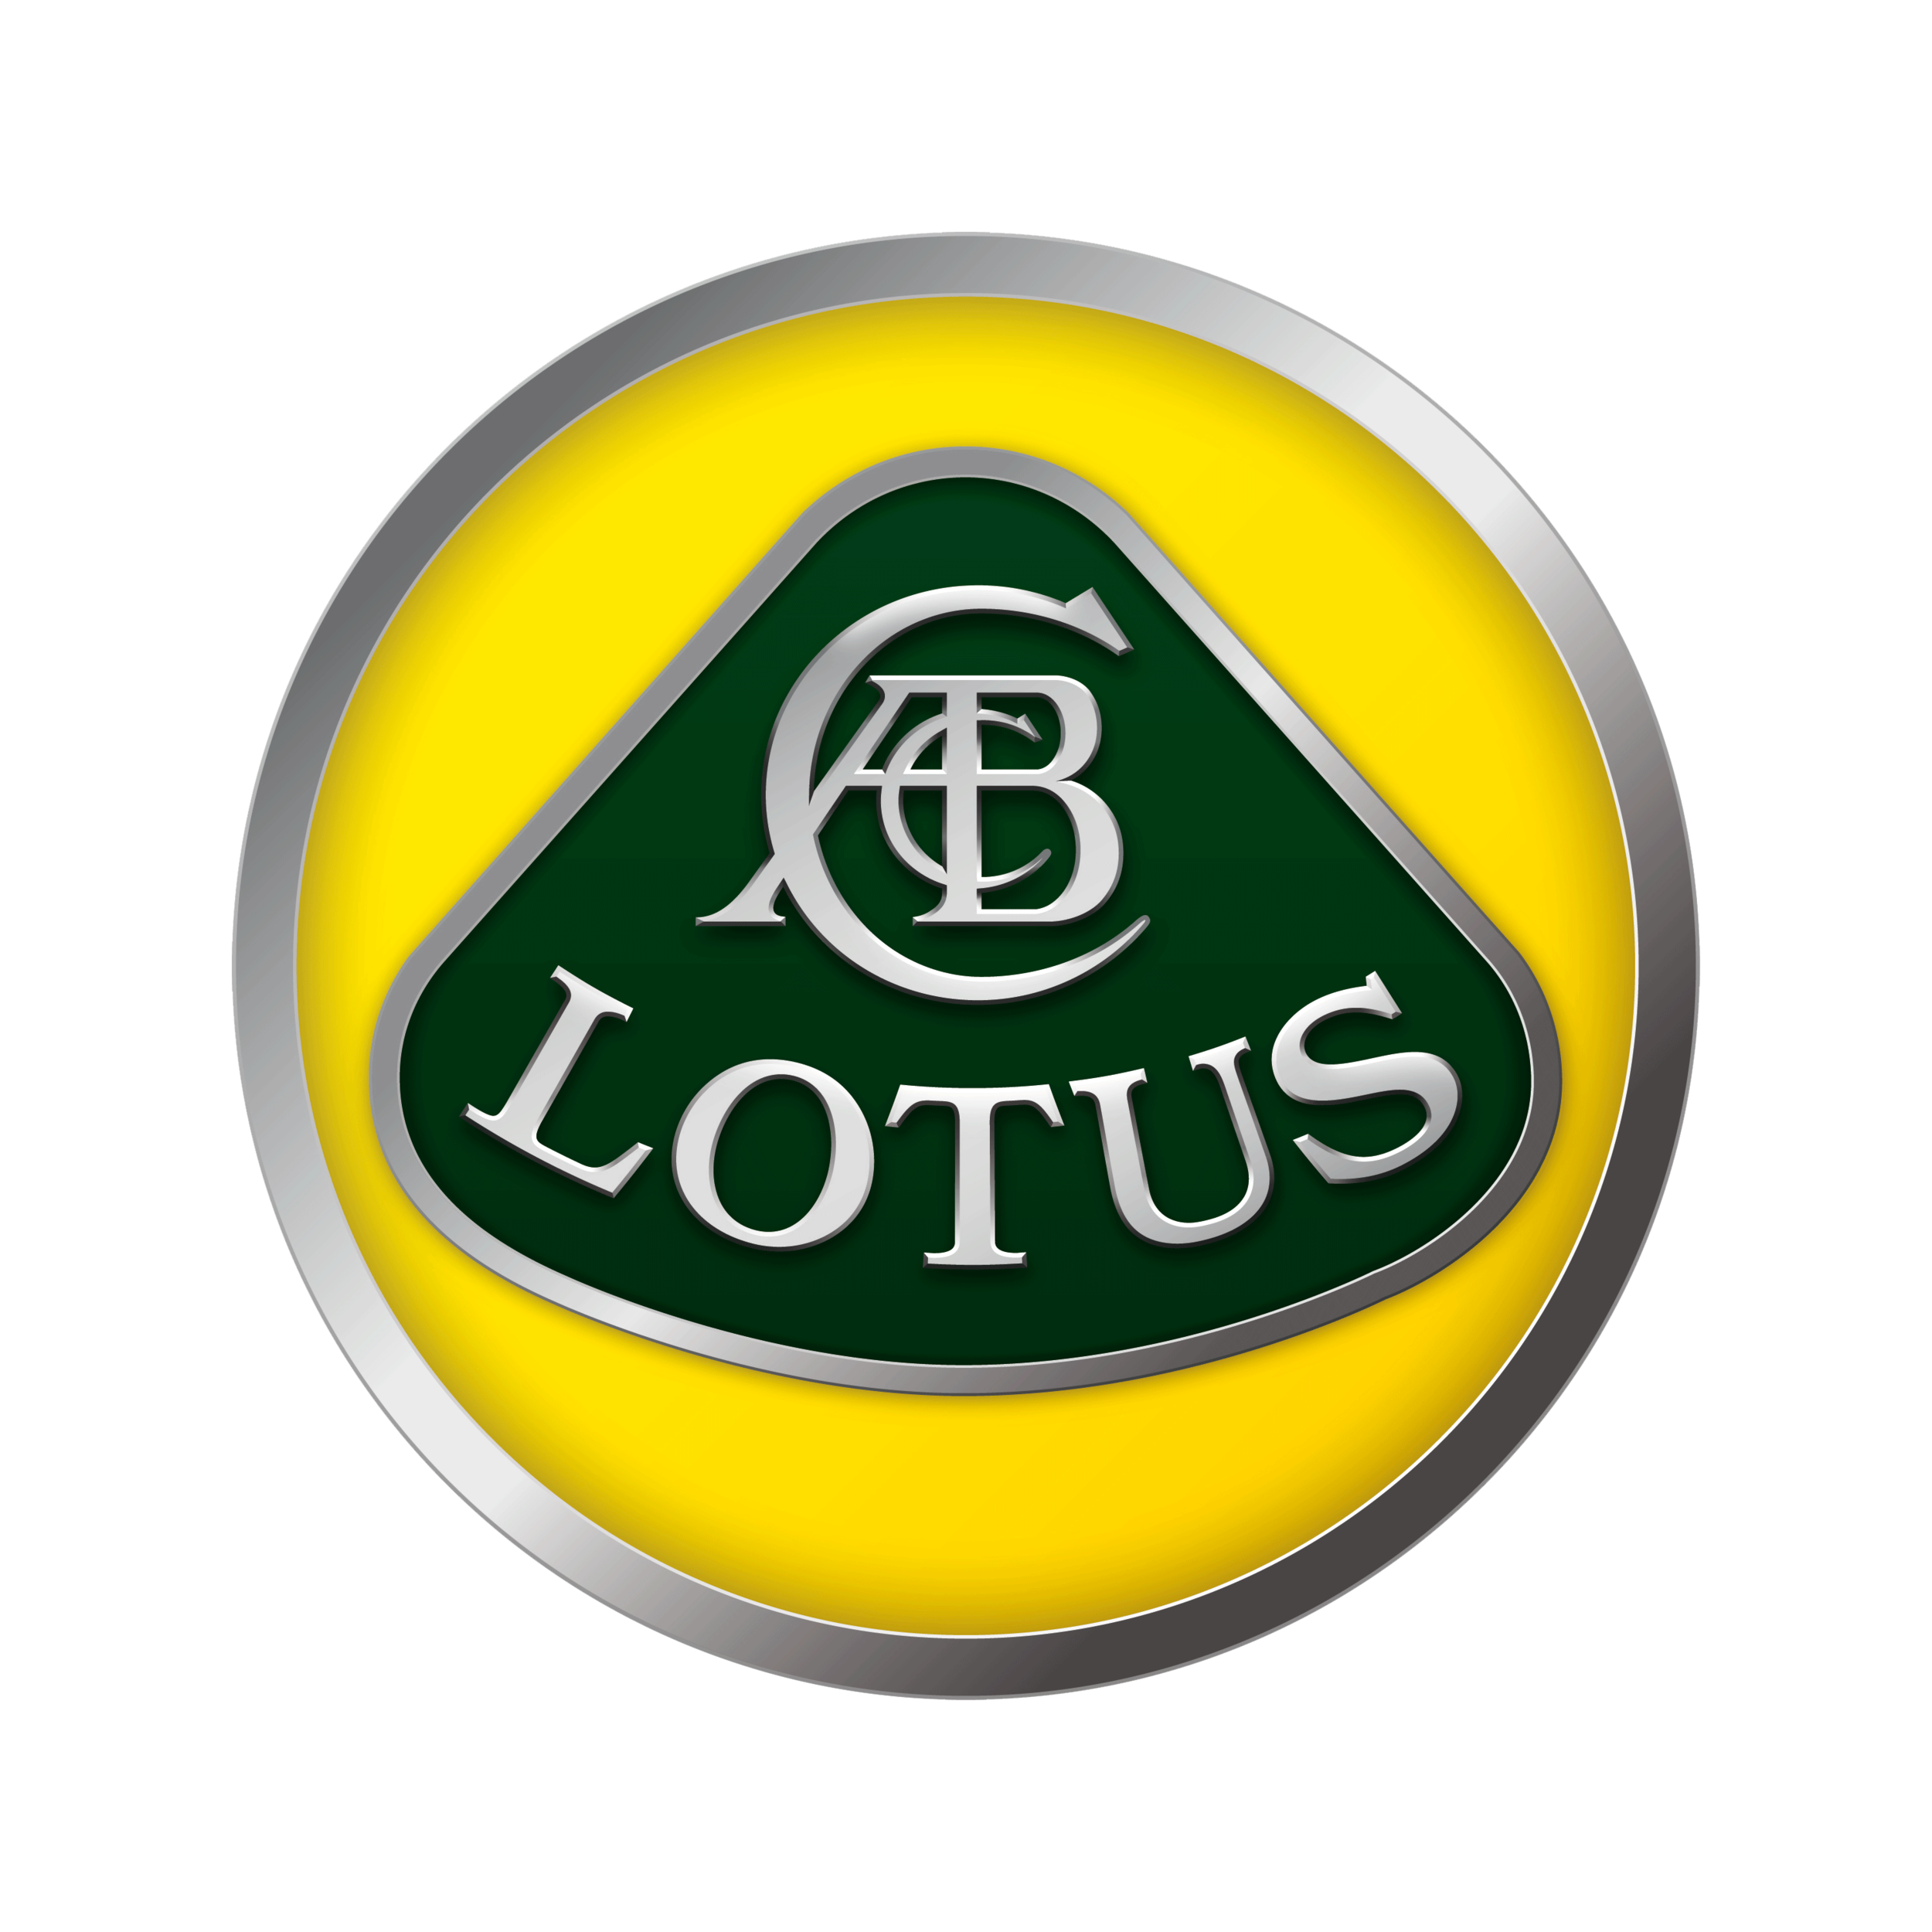 Lotus-logo-3000x3000.png